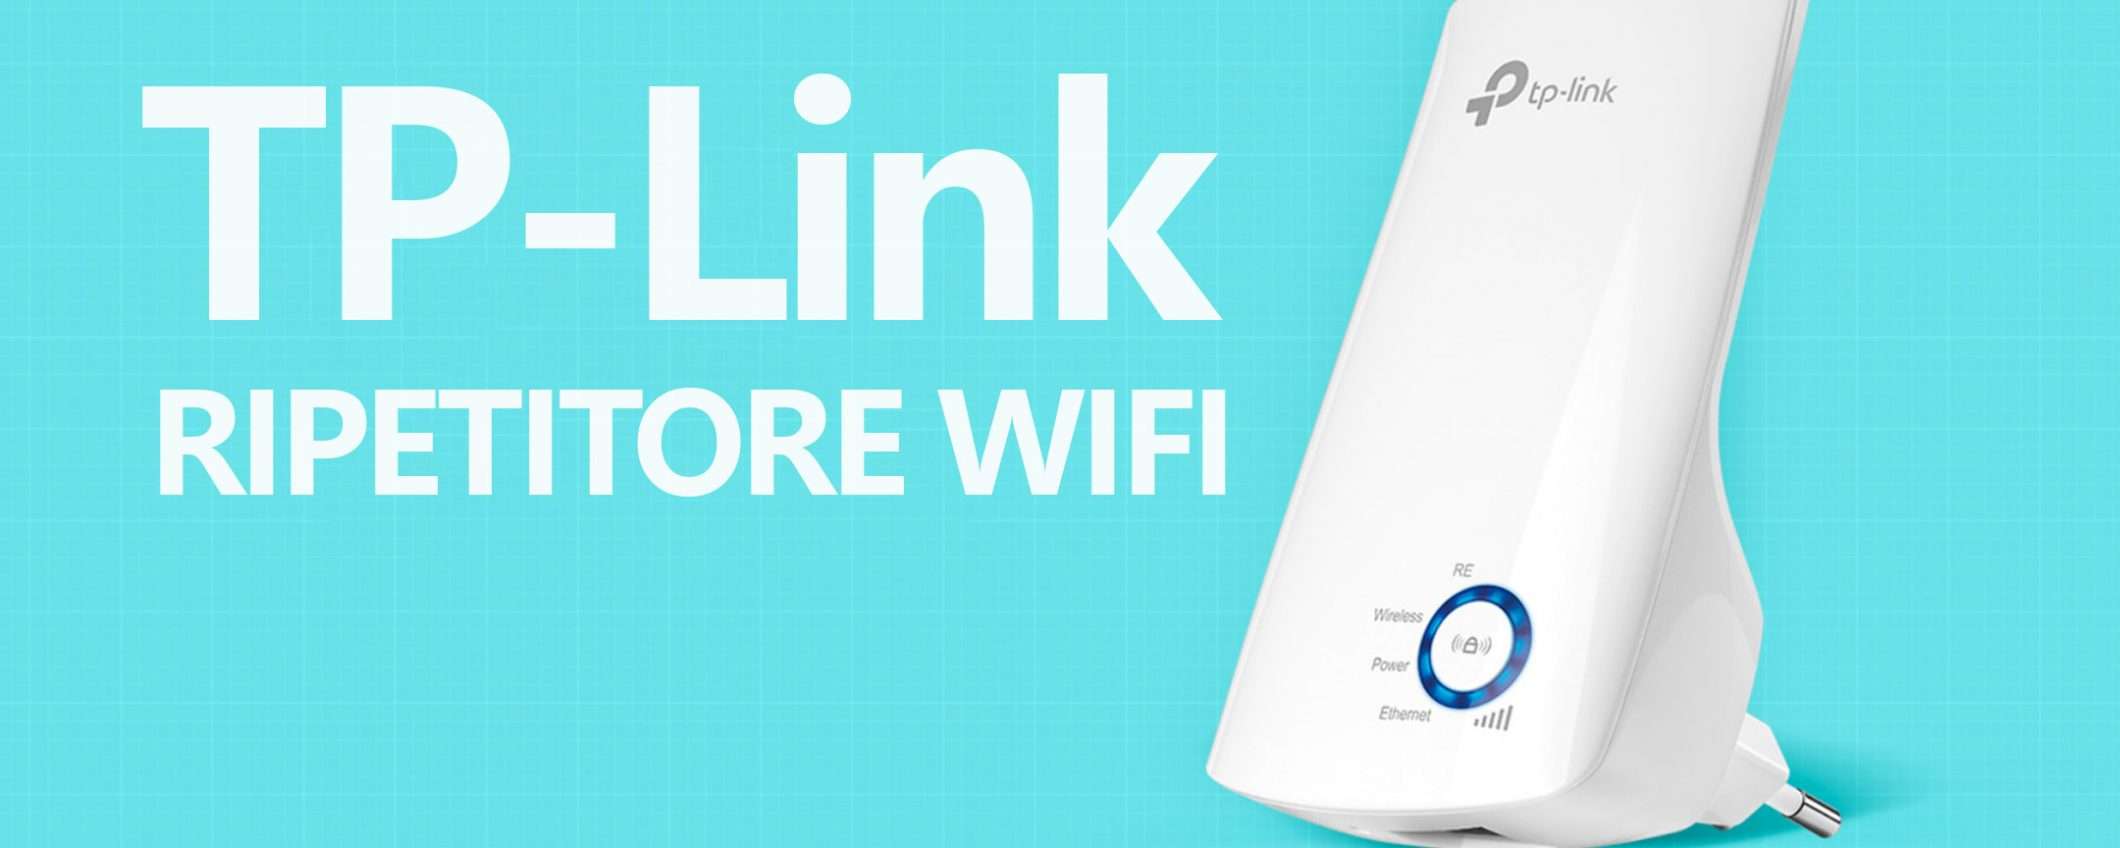 Ripetitore TP-Link: super sconto, super WiFi